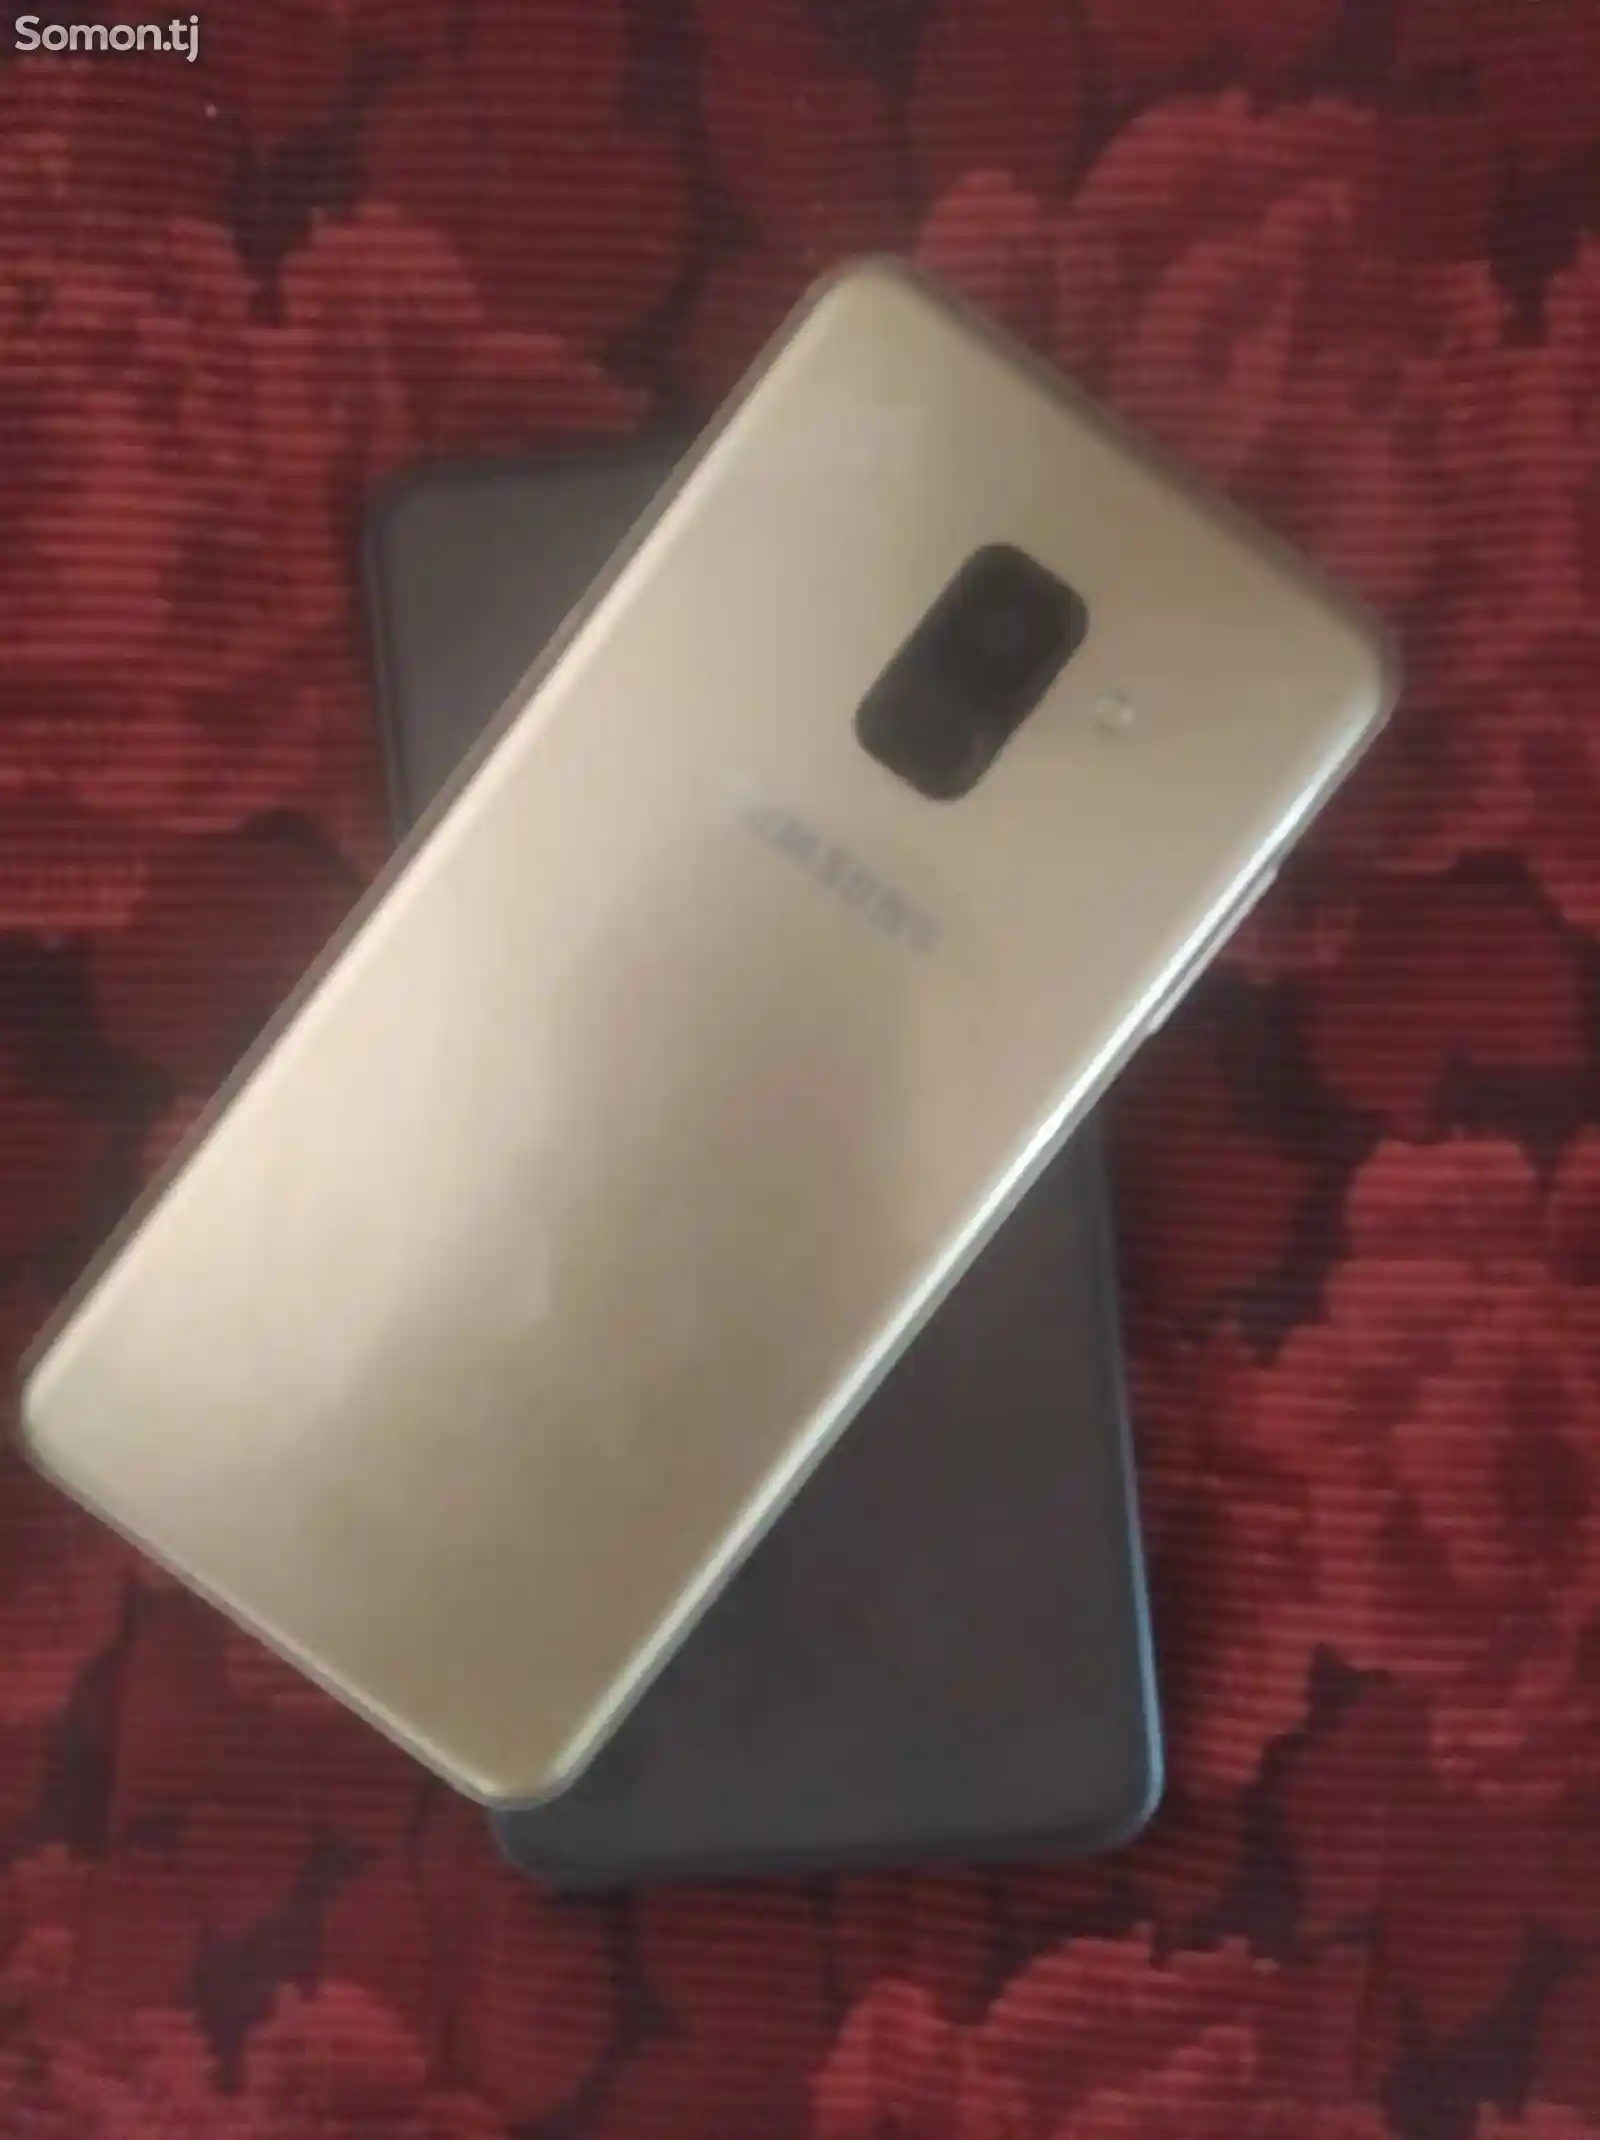 Samsung Galaxy A8-1